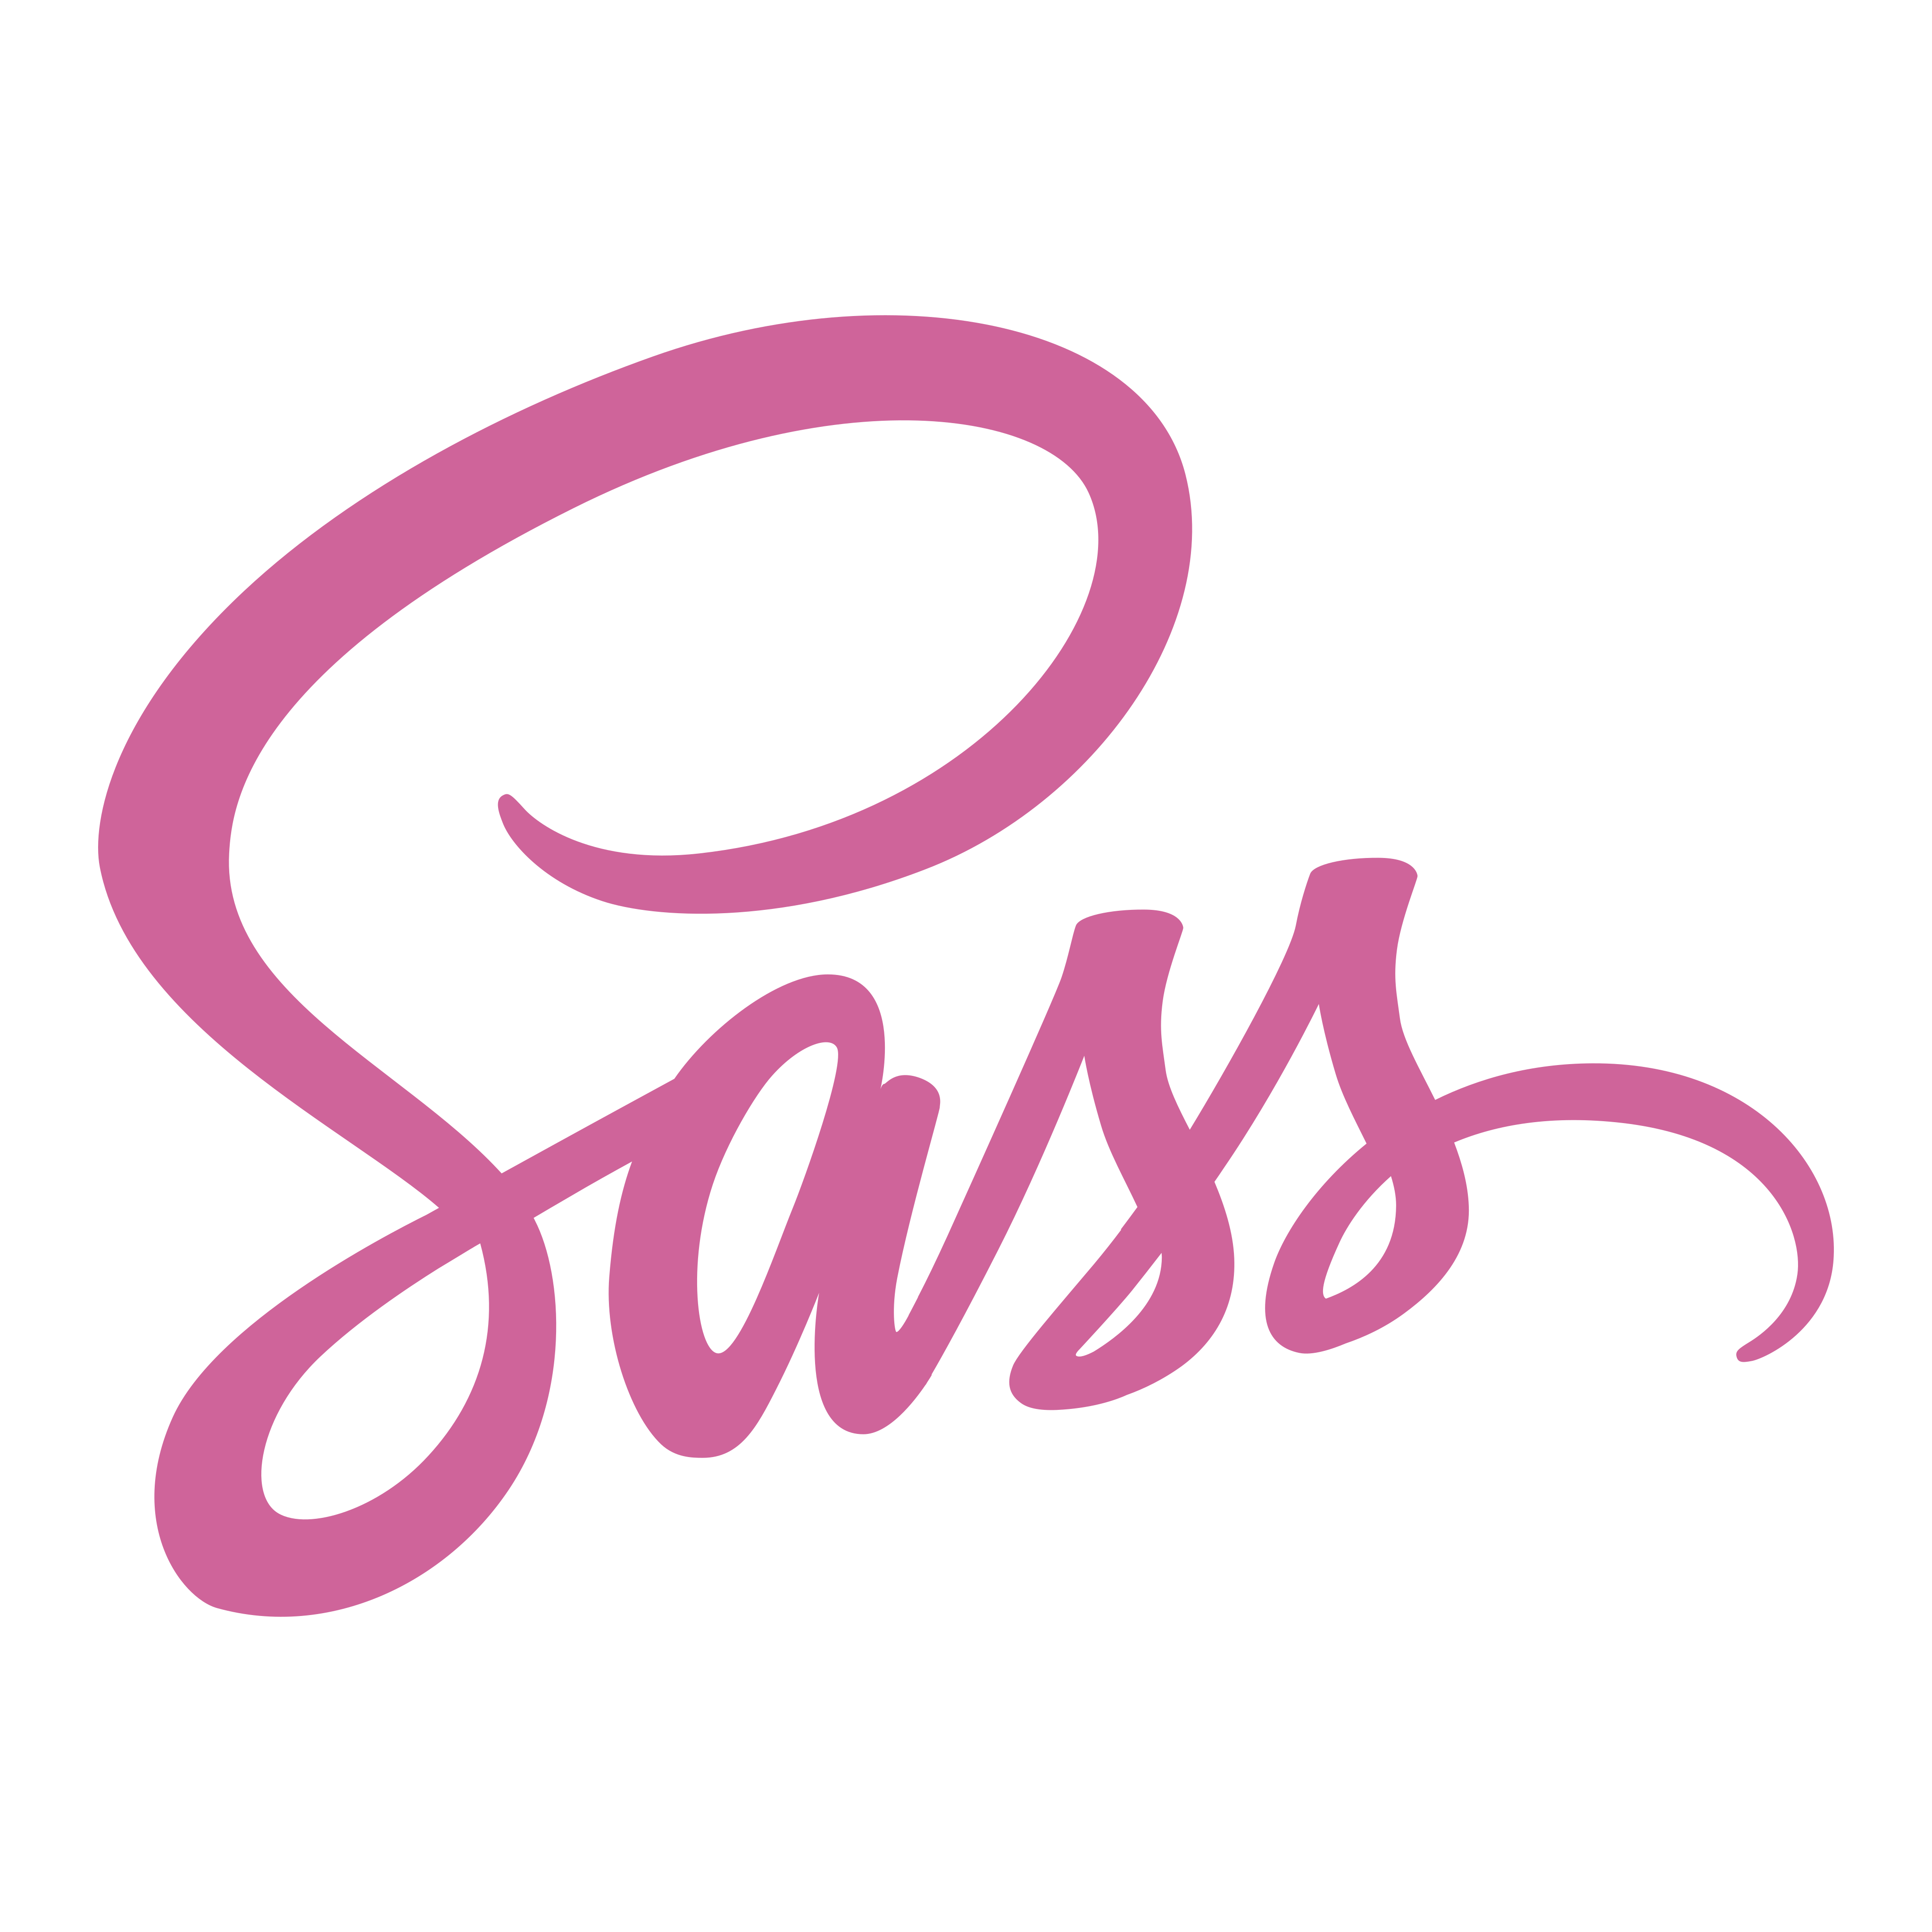 SASS-logo